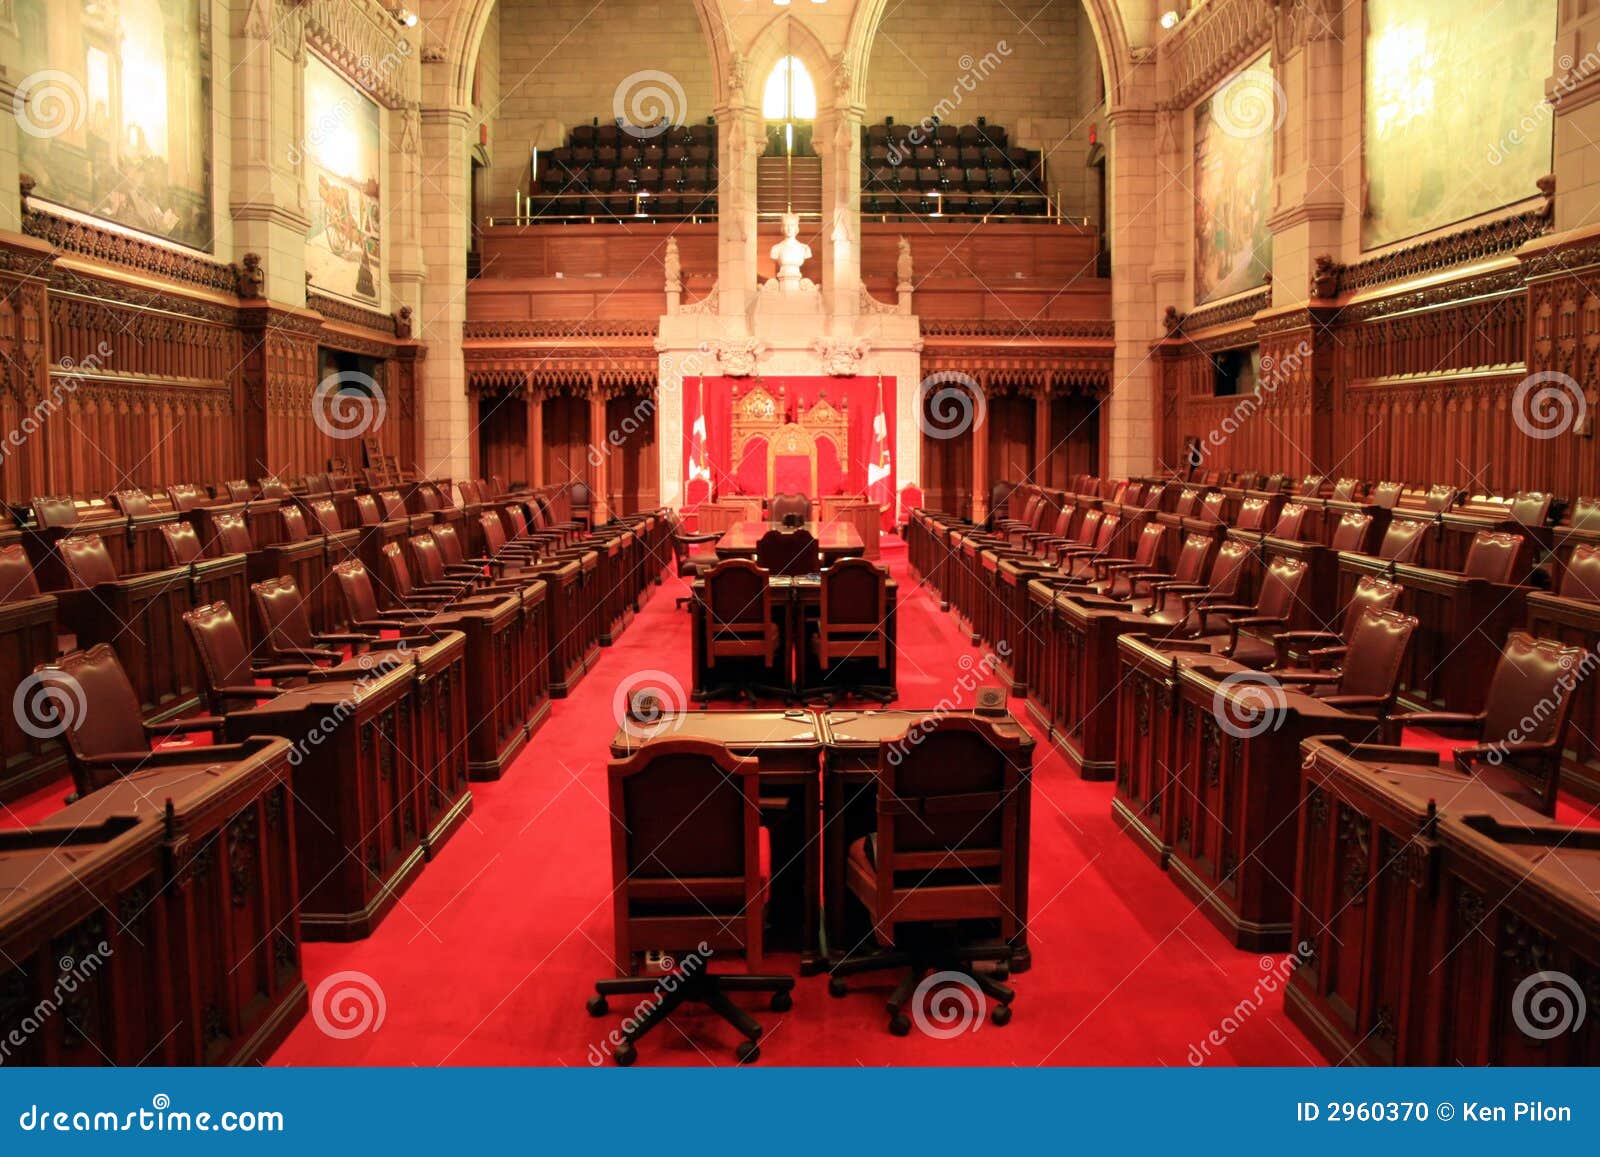 the senate chamber, ottawa.